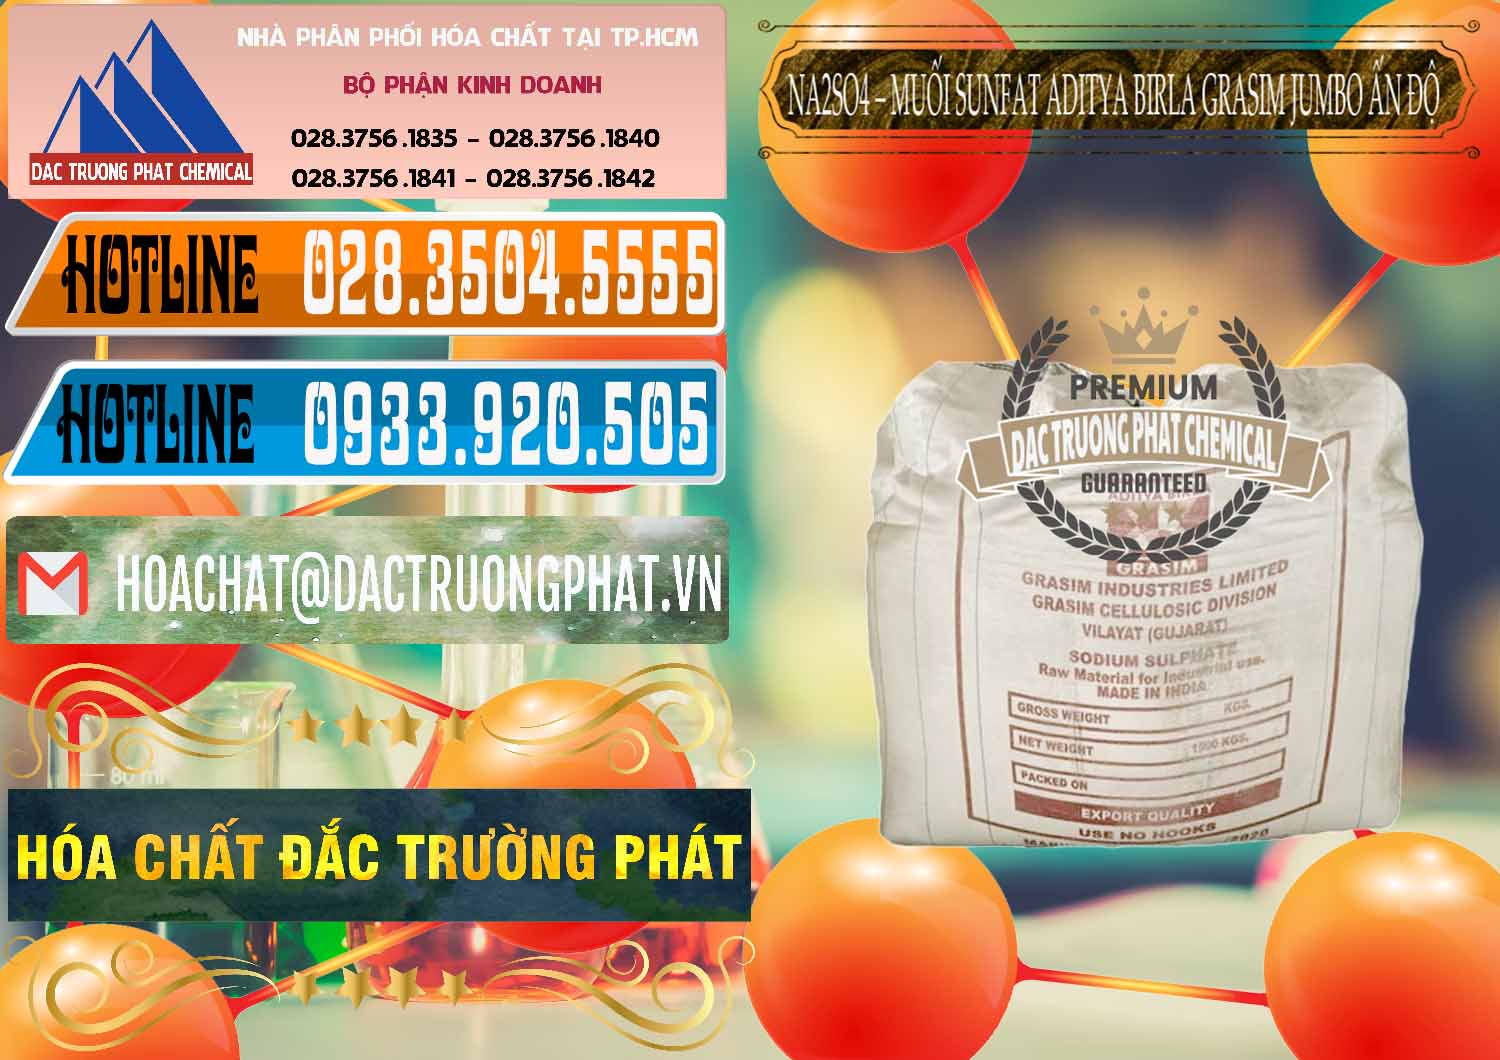 Bán ( cung cấp ) Sodium Sulphate - Muối Sunfat Na2SO4 Jumbo Bành Aditya Birla Grasim Ấn Độ India - 0357 - Đơn vị chuyên phân phối và cung ứng hóa chất tại TP.HCM - stmp.net